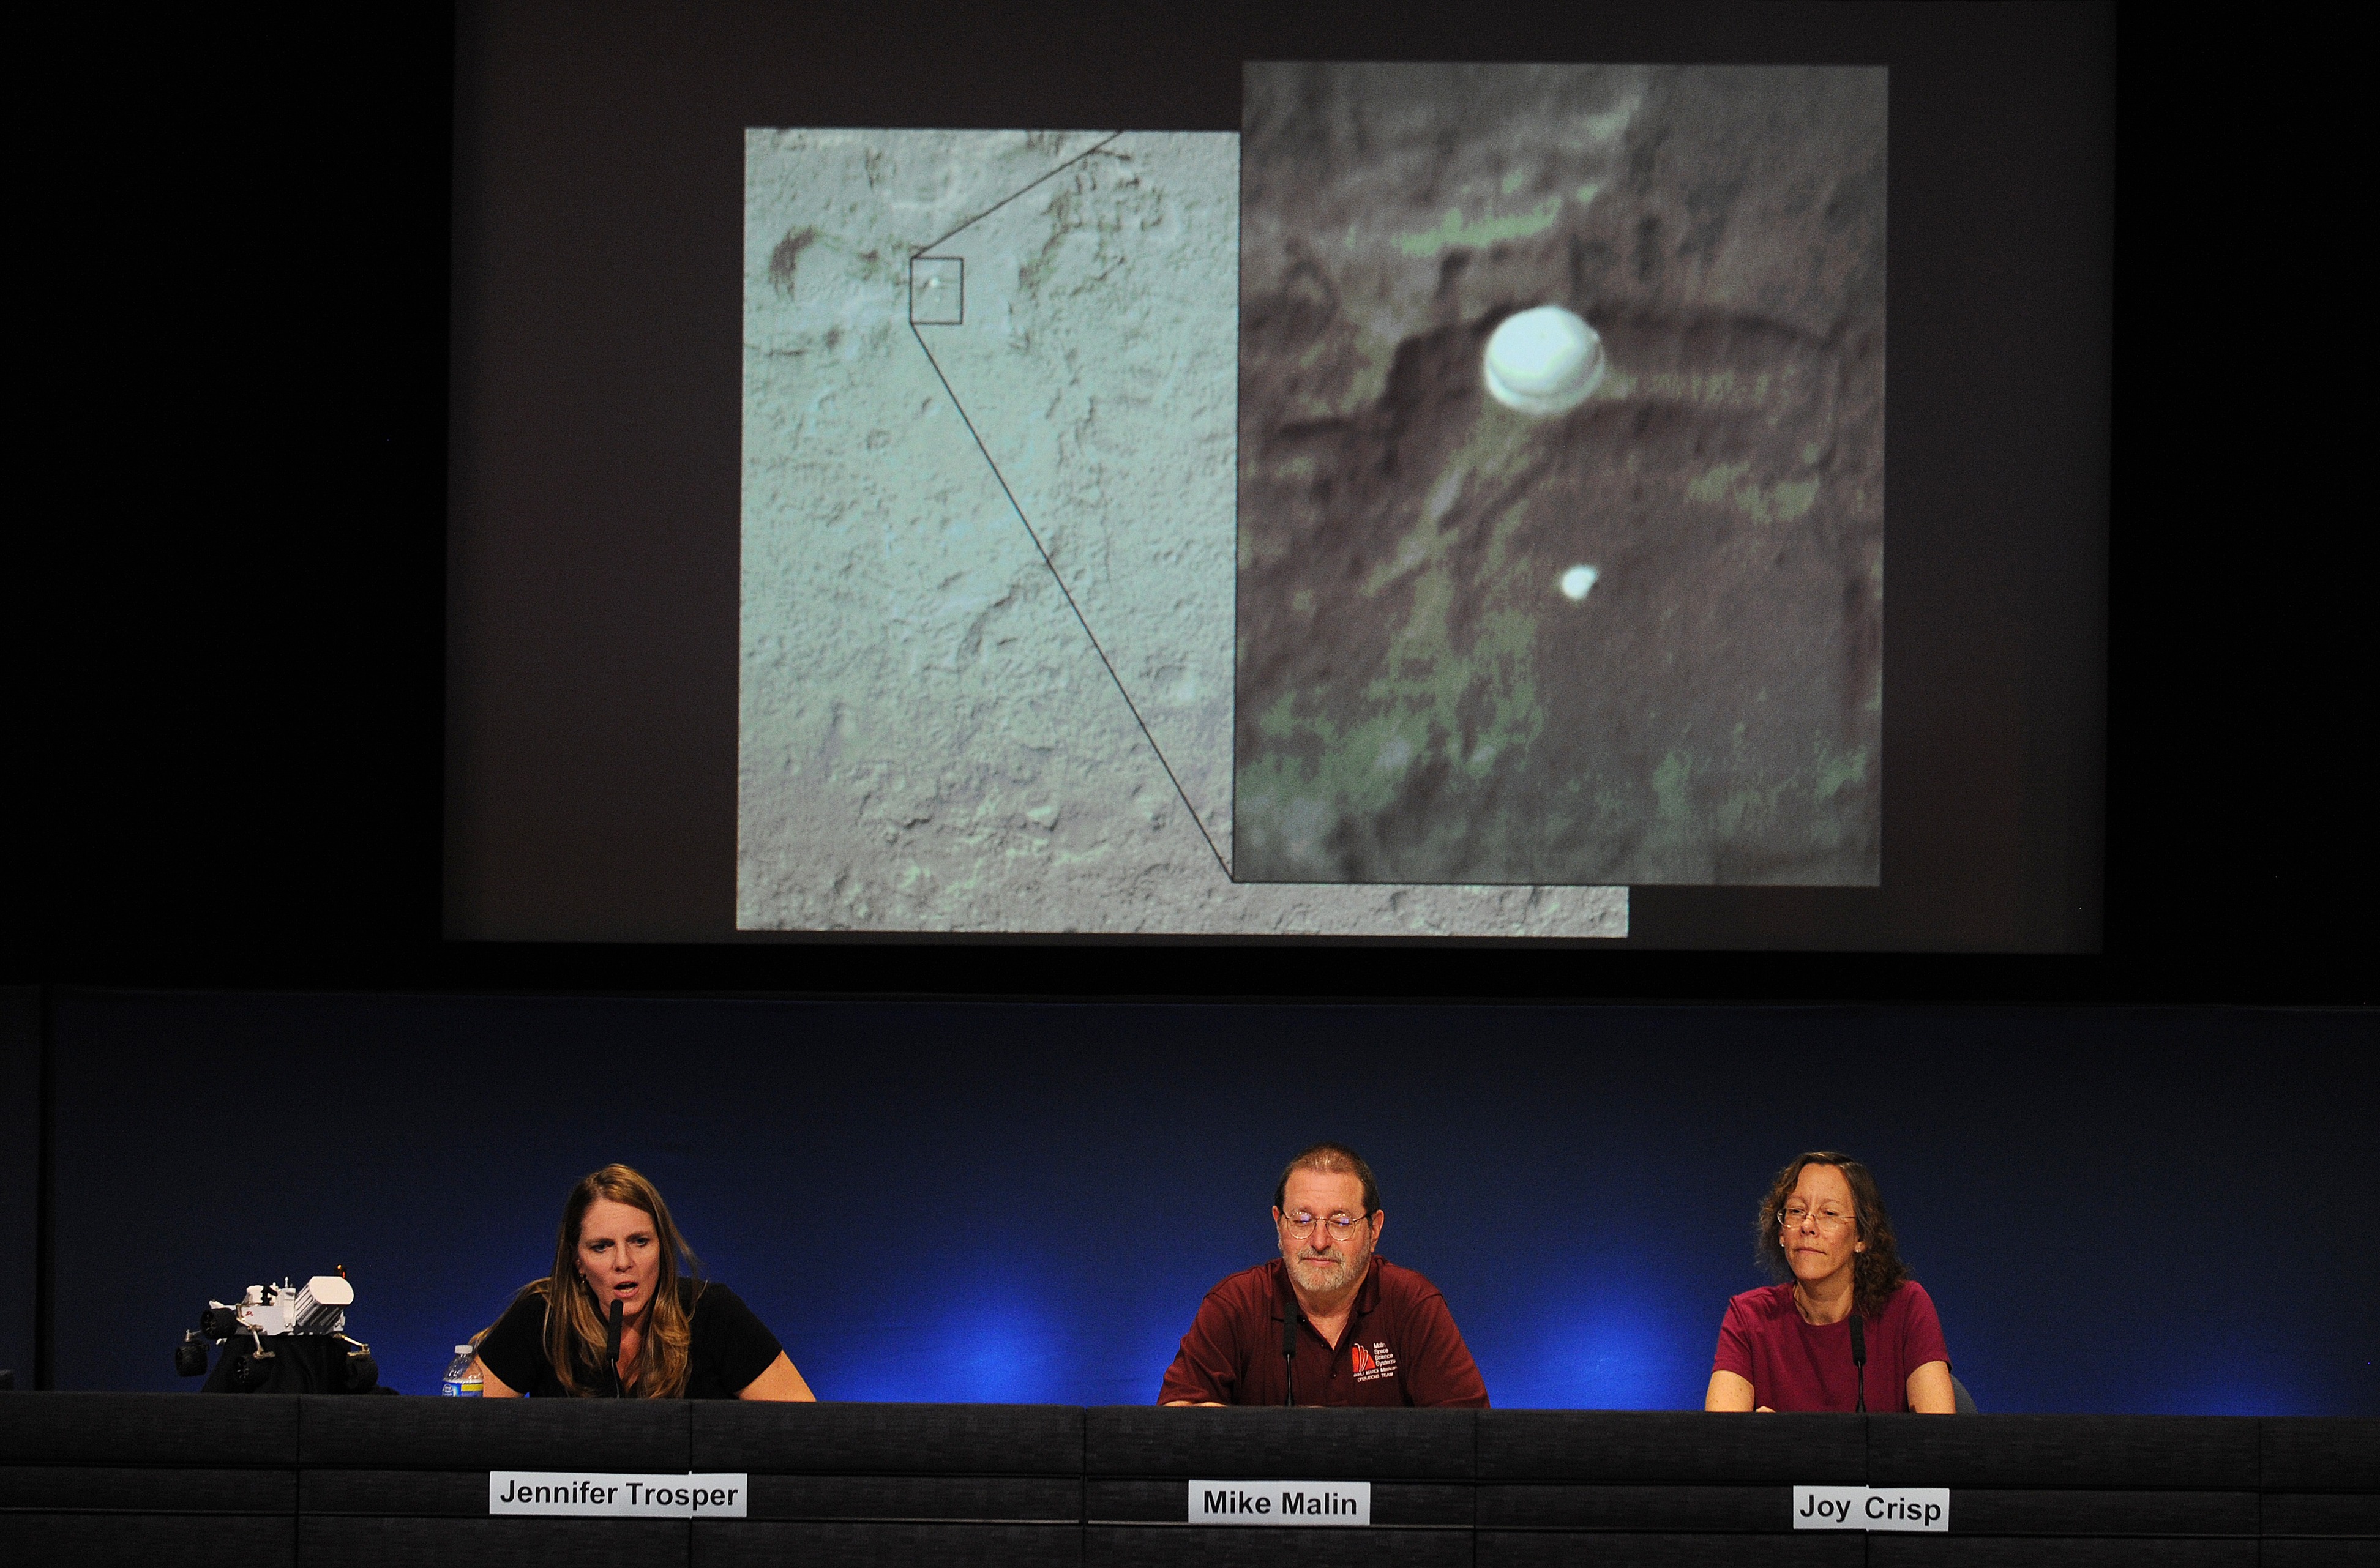 A Curiosity landolása után adott sajtótájékoztatón bemutatják az „ejtőernyős” Marsot érés pillanatait – a bal oldalon Jennifer Trosper, a misszió igazgatója (2012. augusztus 6.)